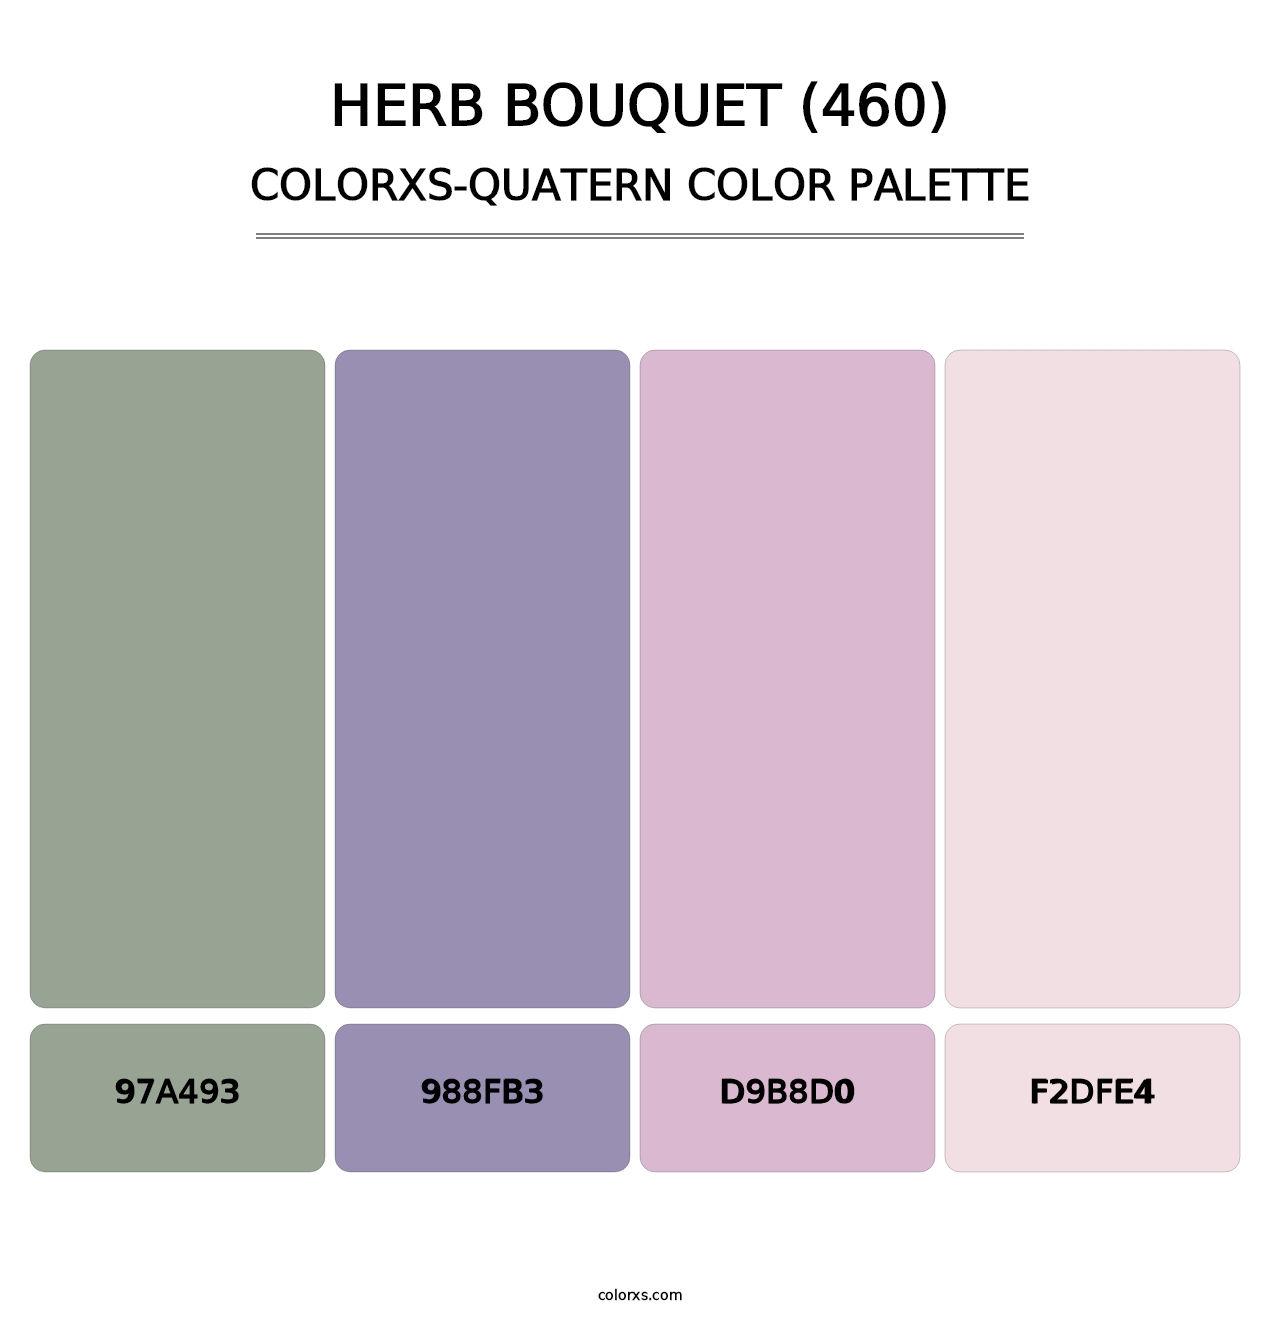 Herb Bouquet (460) - Colorxs Quatern Palette